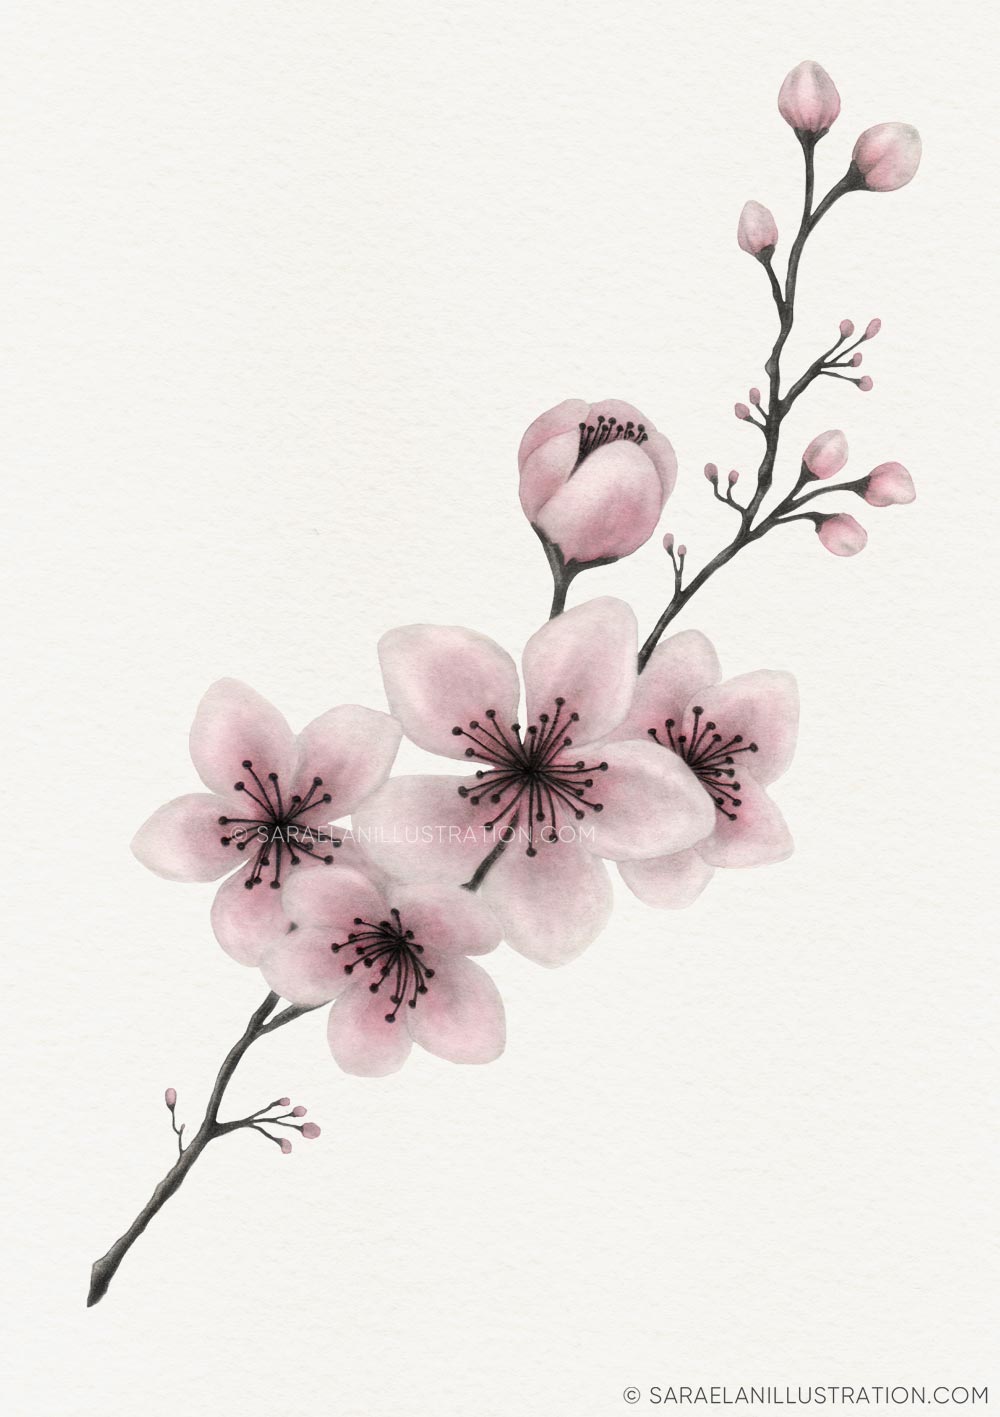 Disegno personalizzato di ramo di ciliegio rosa in acquerello per la bomboniera di una comunione